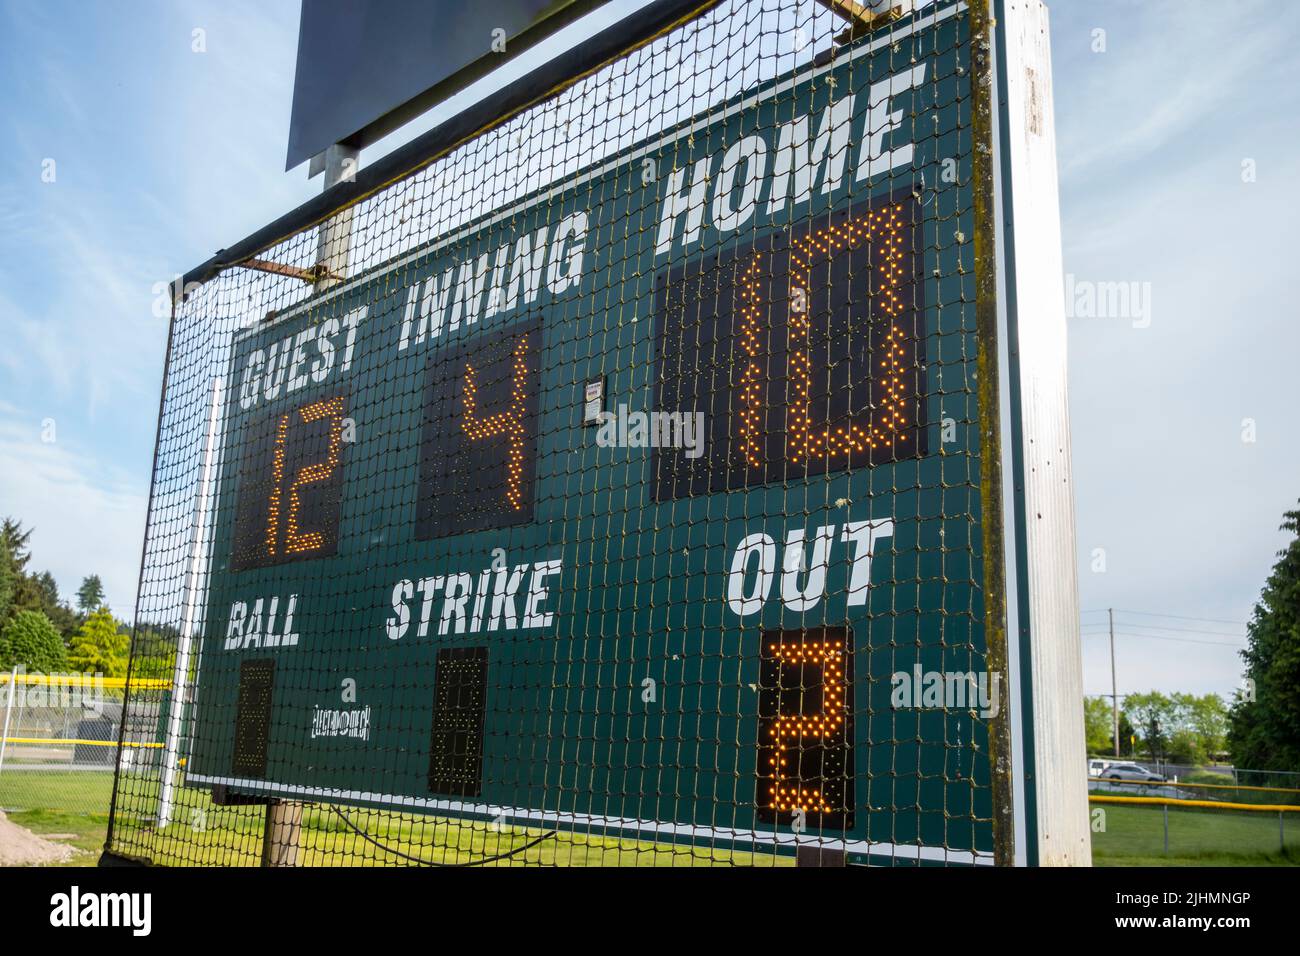 Woodinville, WA USA - circa May 2022: Close up view of a scoreboard at a baseball field. Stock Photo